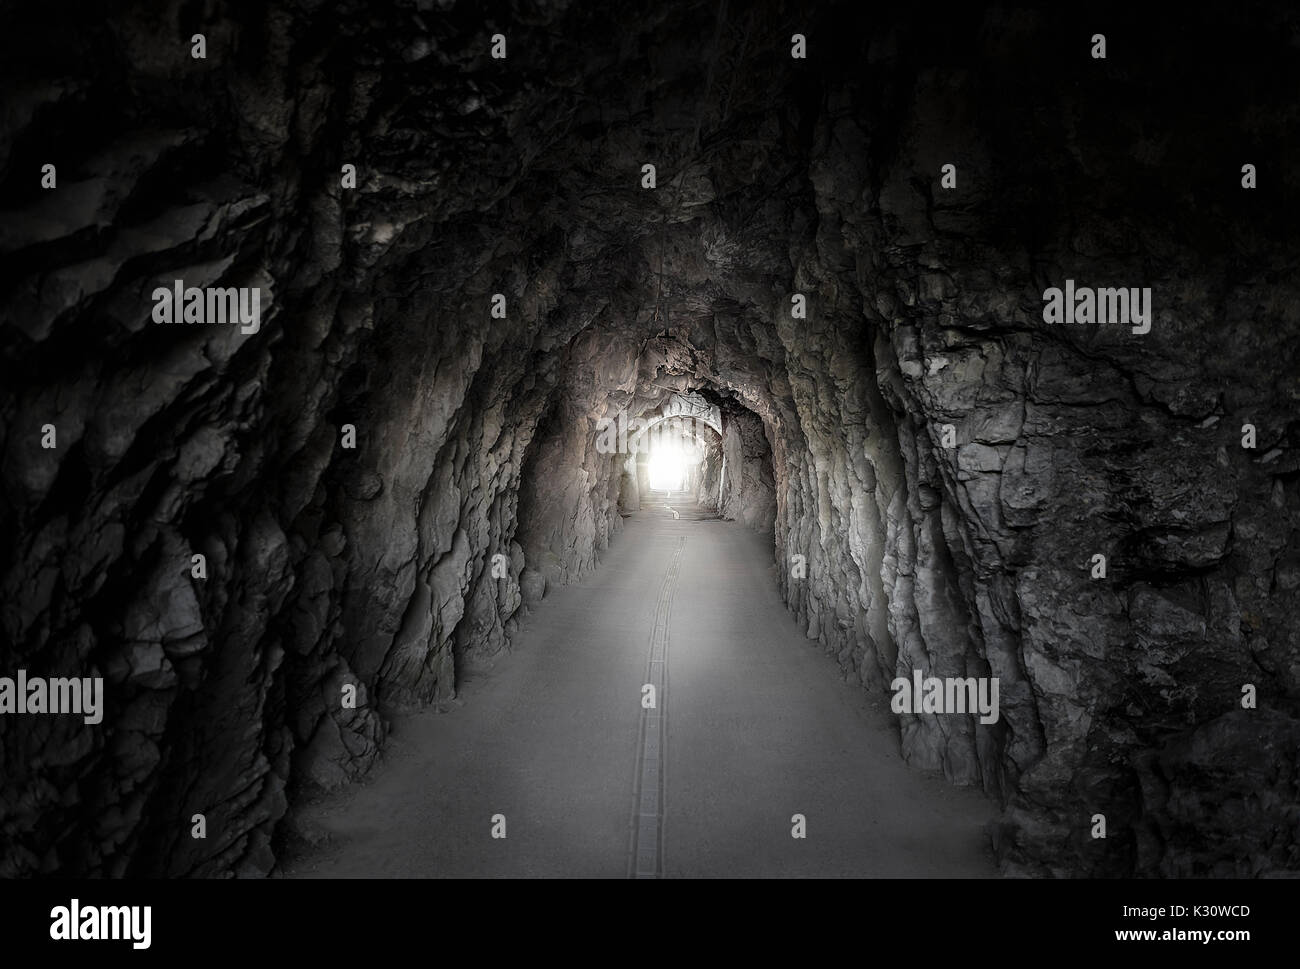 Luce bassa immagine con una strada che passa attraverso un tunnel costruito in una montagna, con muri in pietra e una luce brillante in corrispondenza della sua estremità. galleria situata nel SWI. Foto Stock